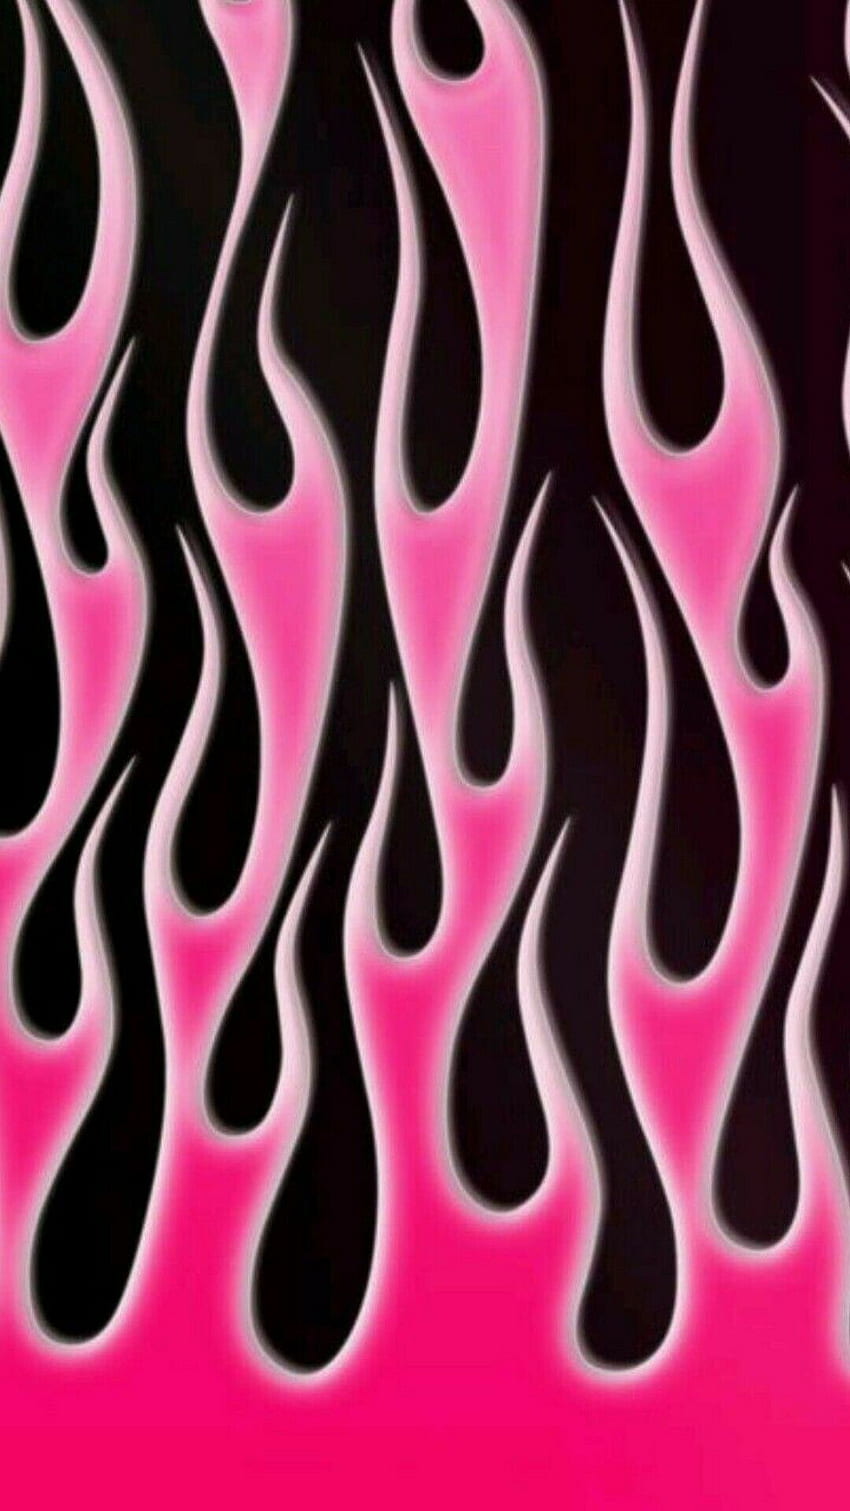 Hendie Purwiliarto en Phone Background 15. Rosa y negro, Pink Flames fondo de pantalla del teléfono